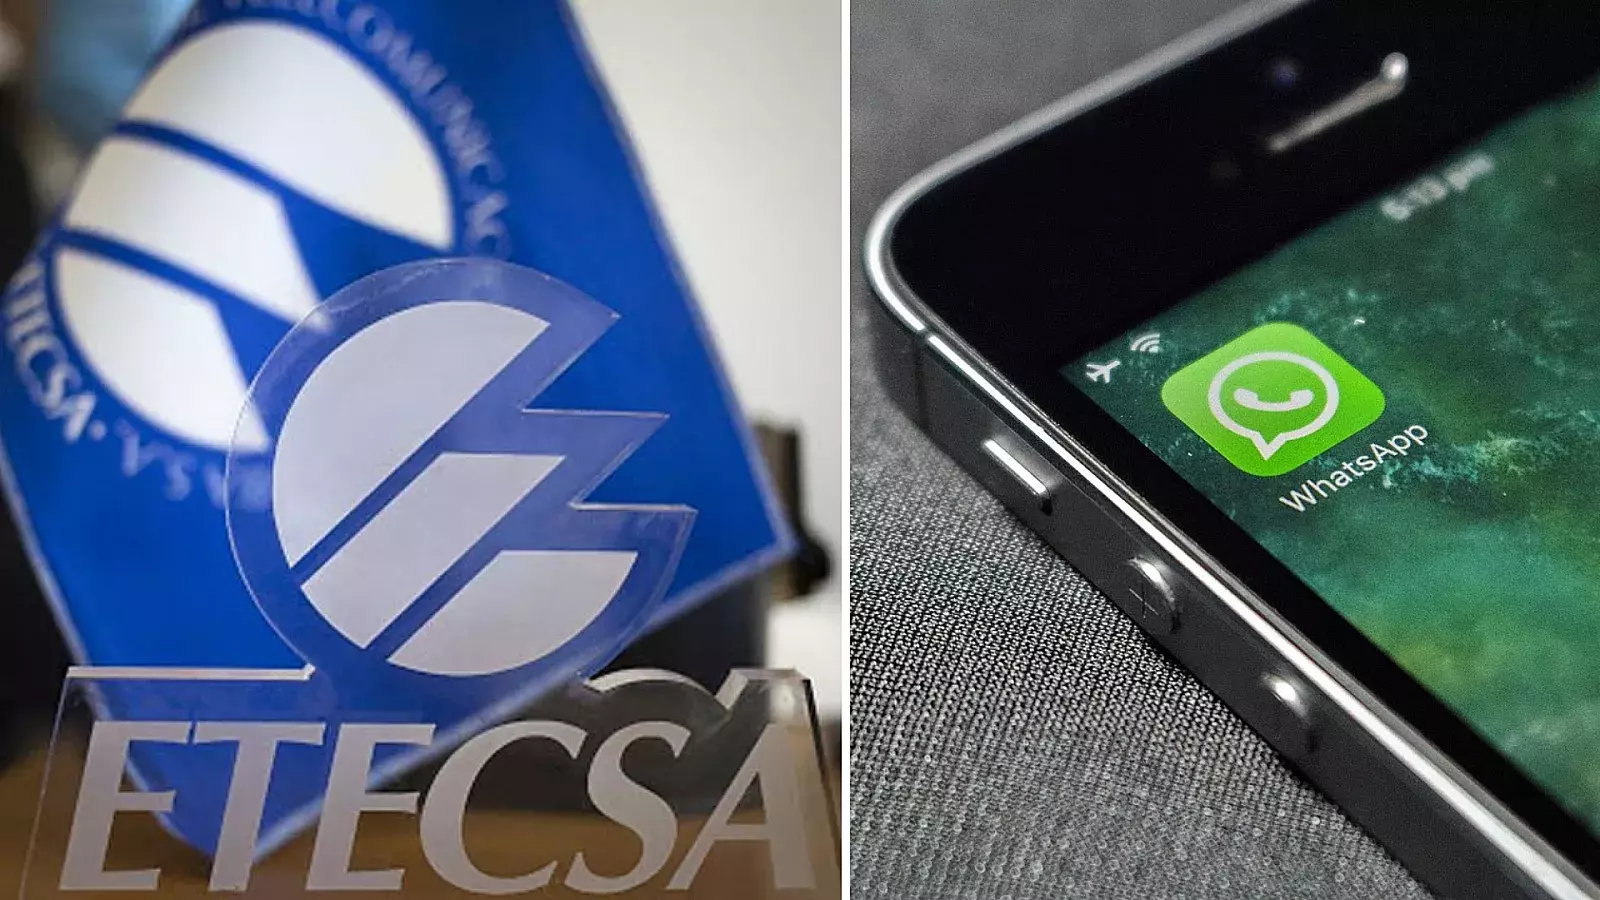 Etecsa ofrece WhatsApp gratis durante un mes